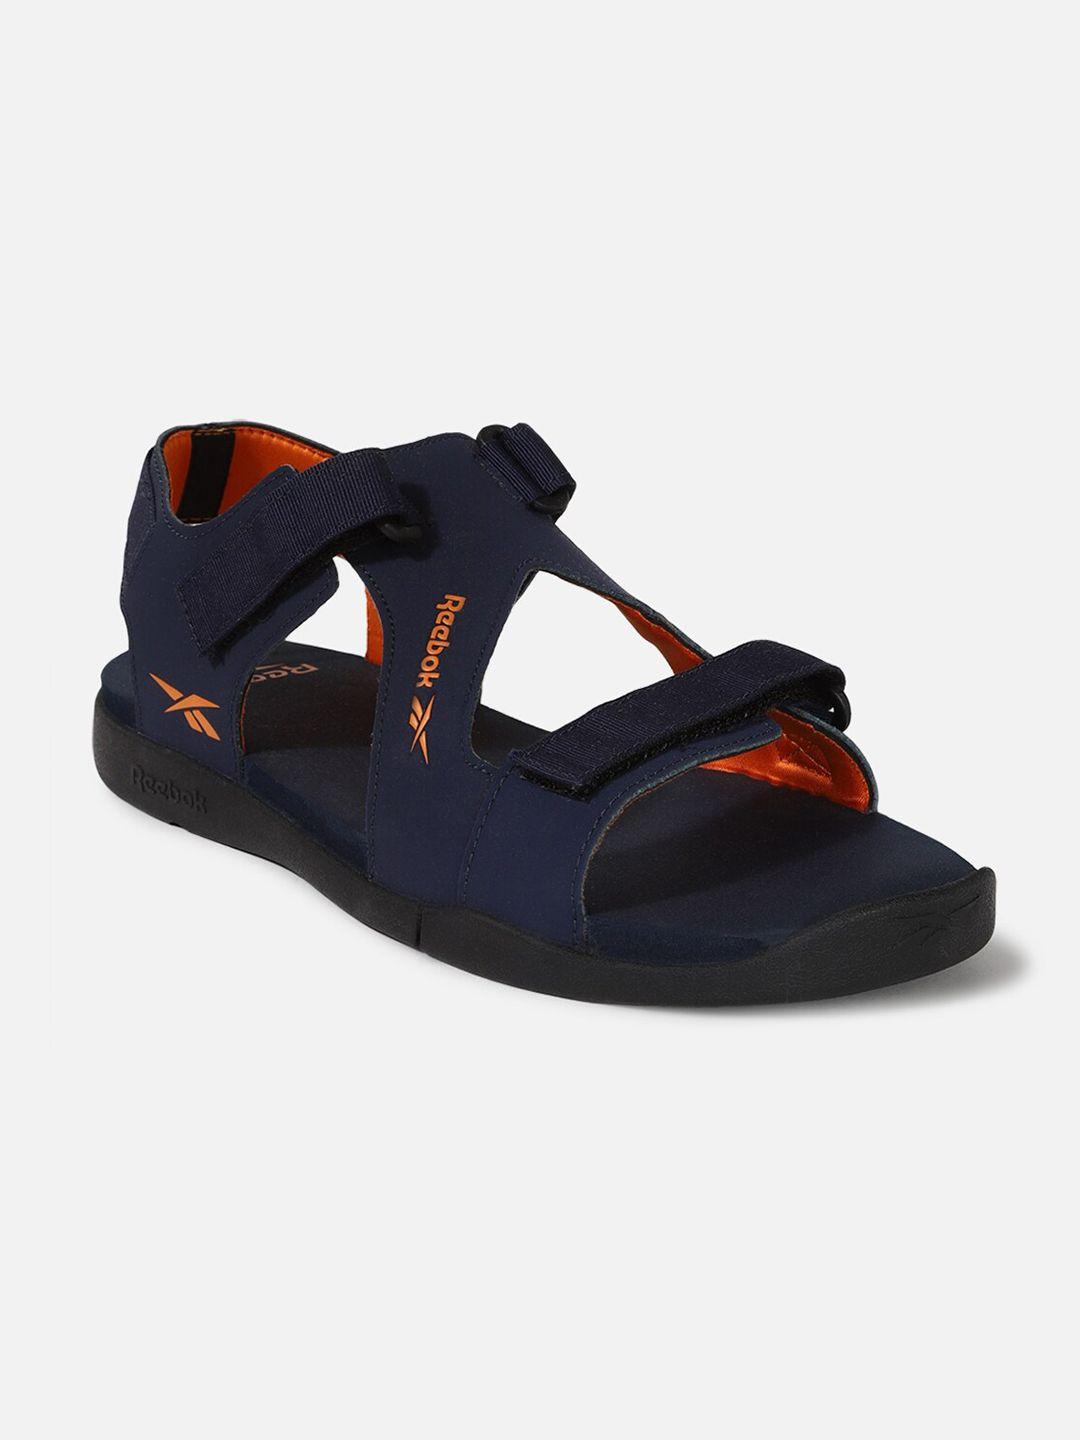 reebok-men-ezra-slides-sports-sandals